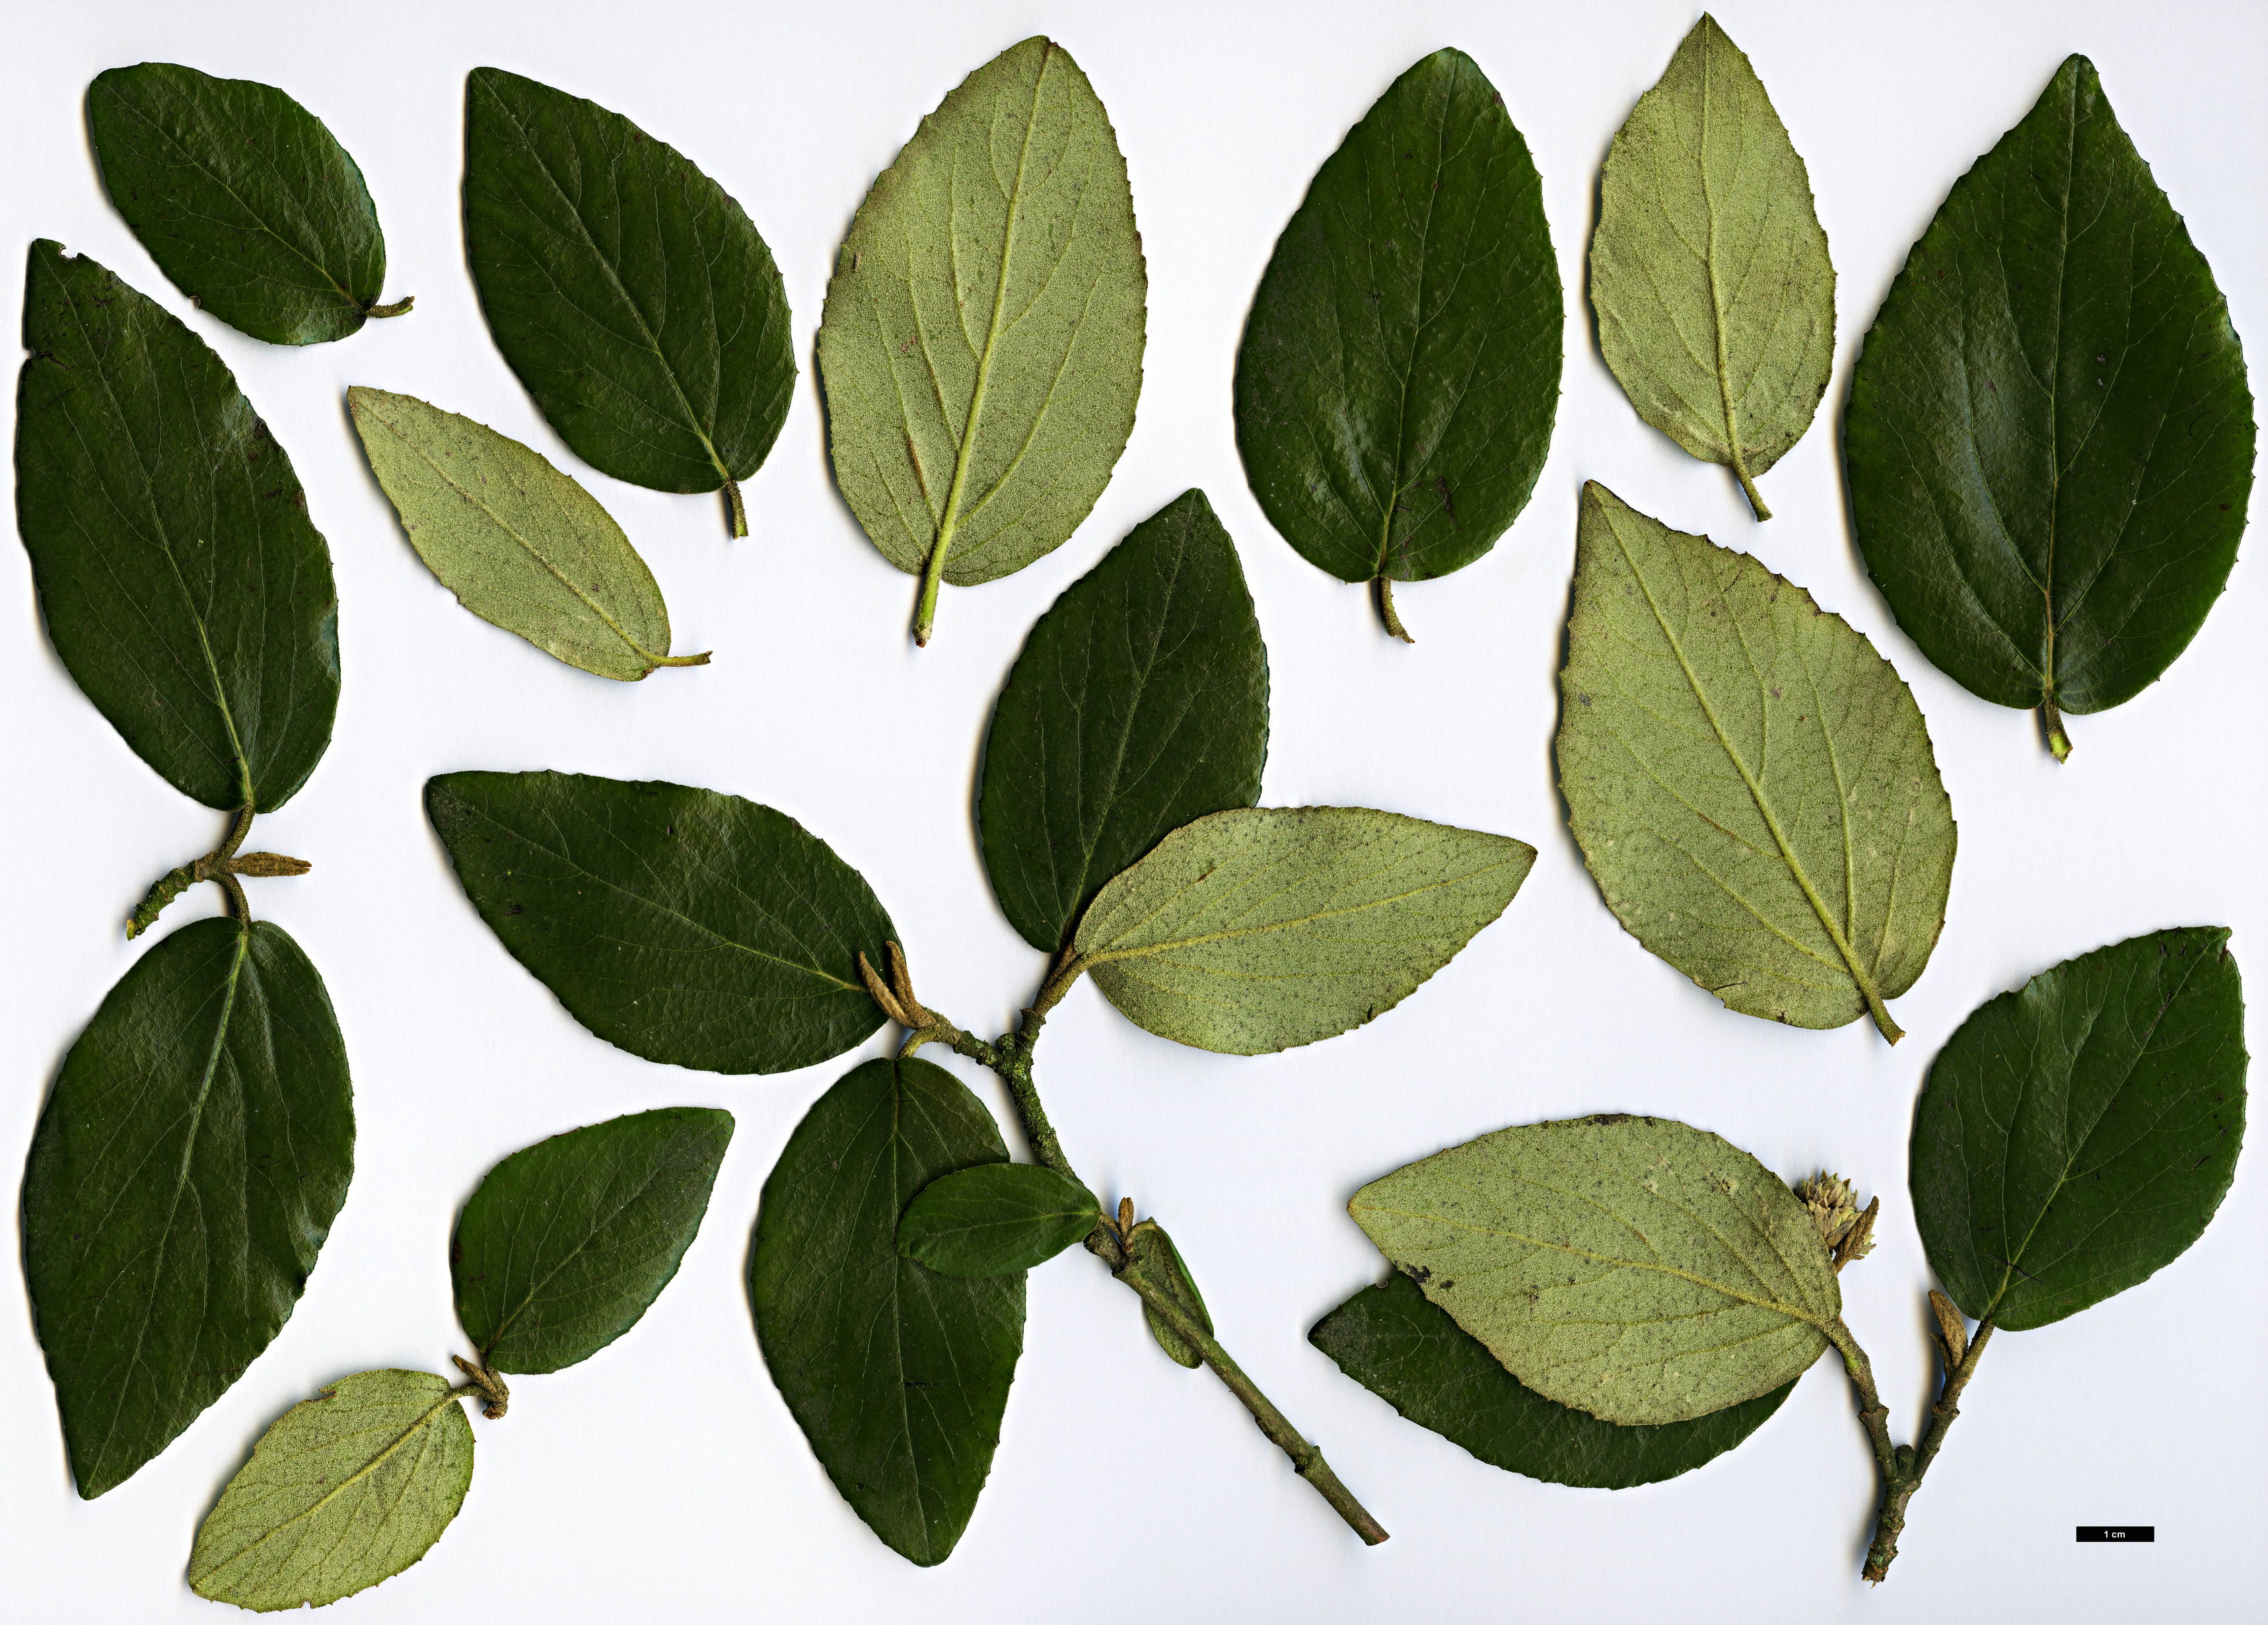 High resolution image: Family: Adoxaceae - Genus: Viburnum - Taxon: ×burkwoodii (V.carlesii × V.utile)